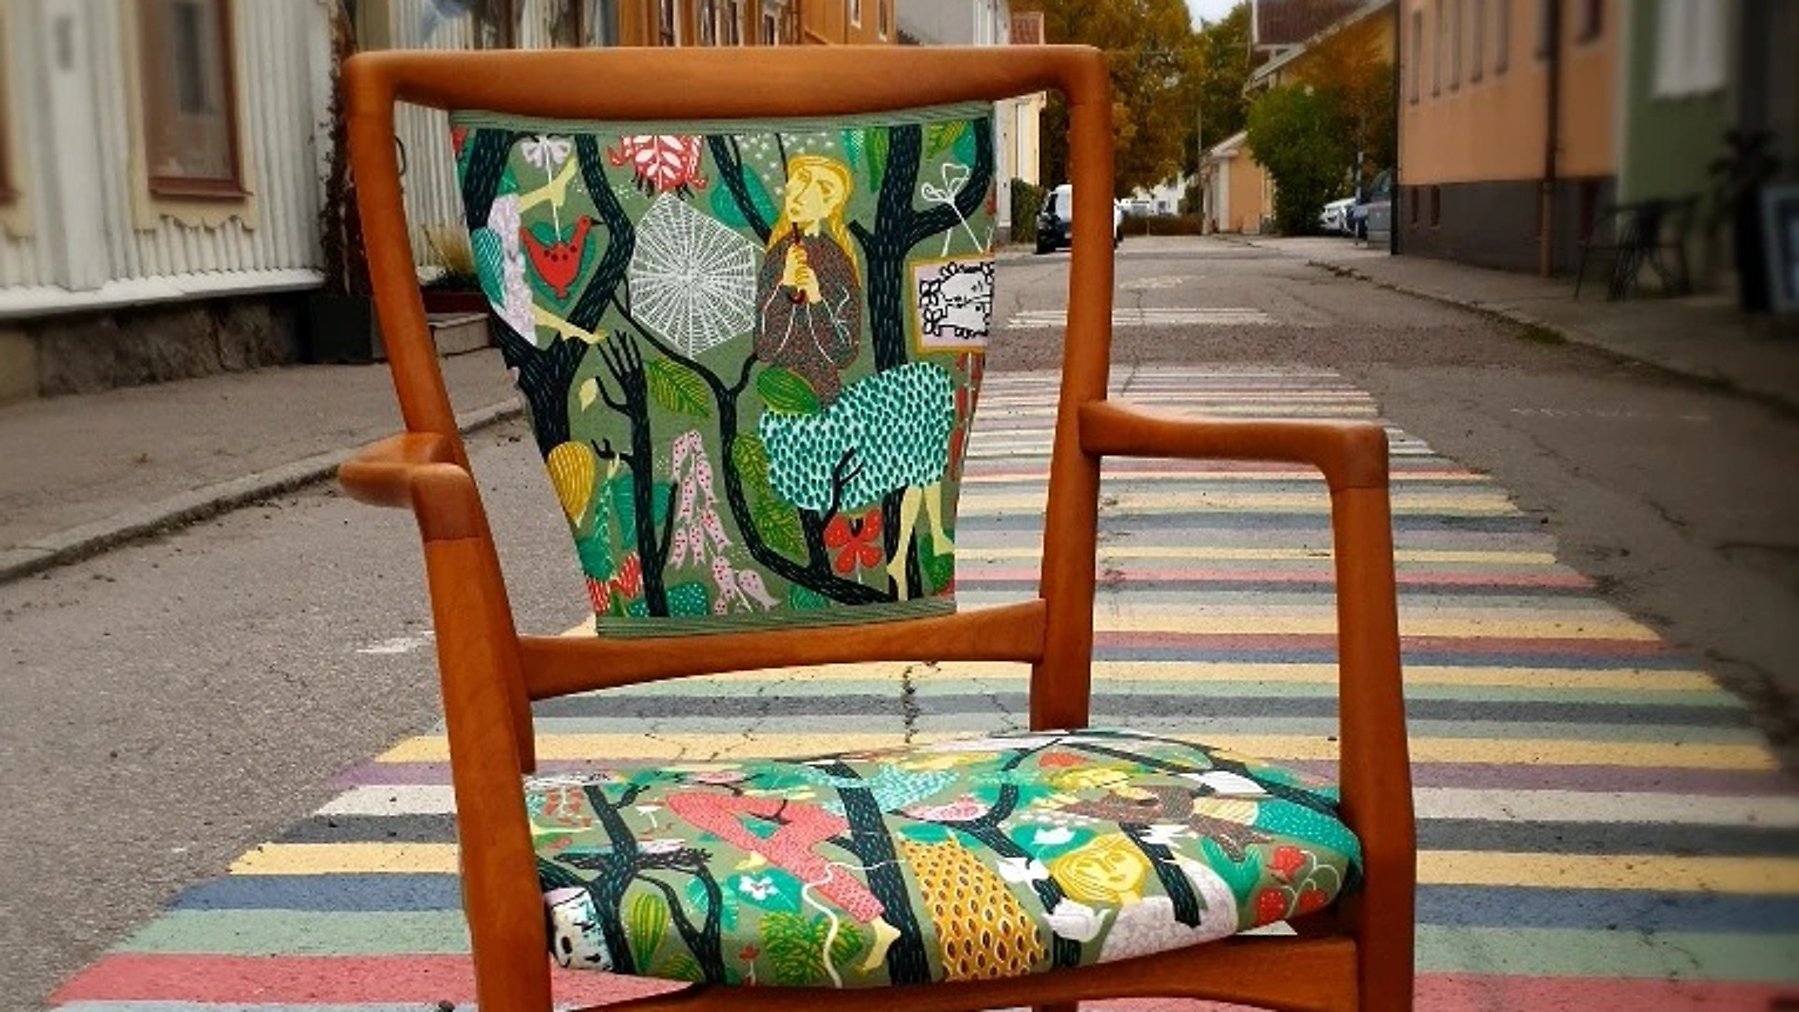 Karmstol med mönstrad tyg står mitt på en gata. En målad trasmatta syns på gatan under stolen.